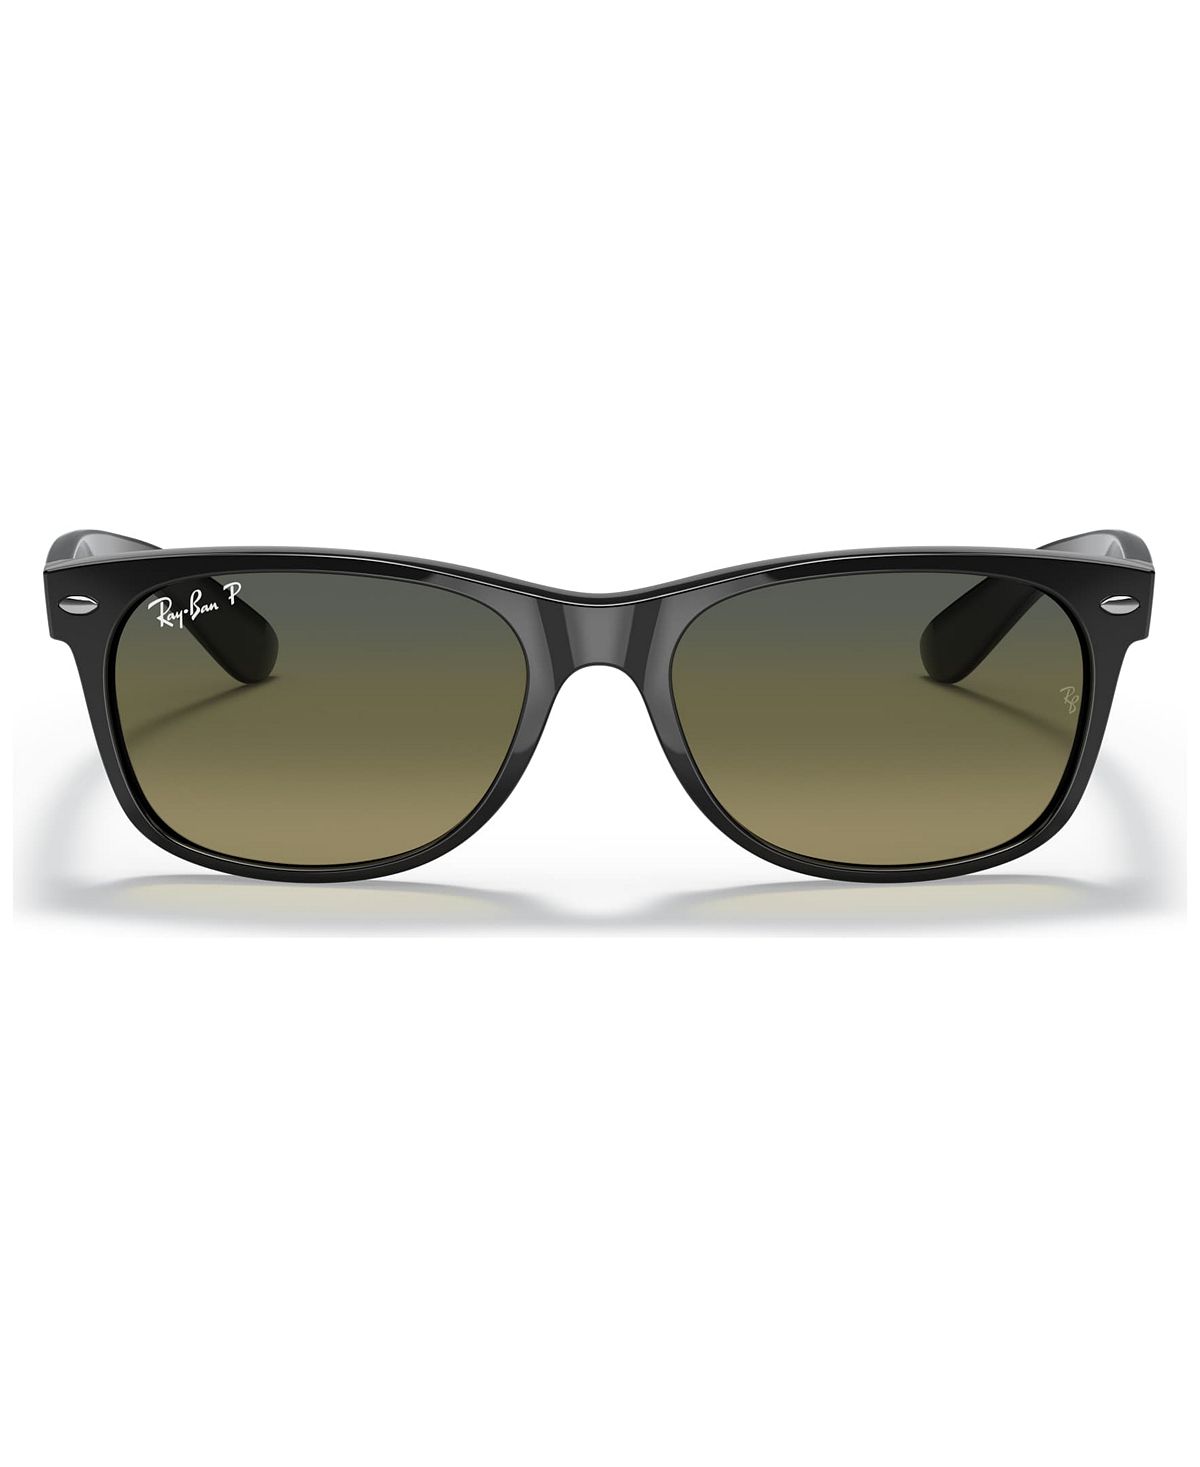 Поляризованные солнцезащитные очки унисекс Disney, RB2132 NEW WAYFARER Ray-Ban, черный